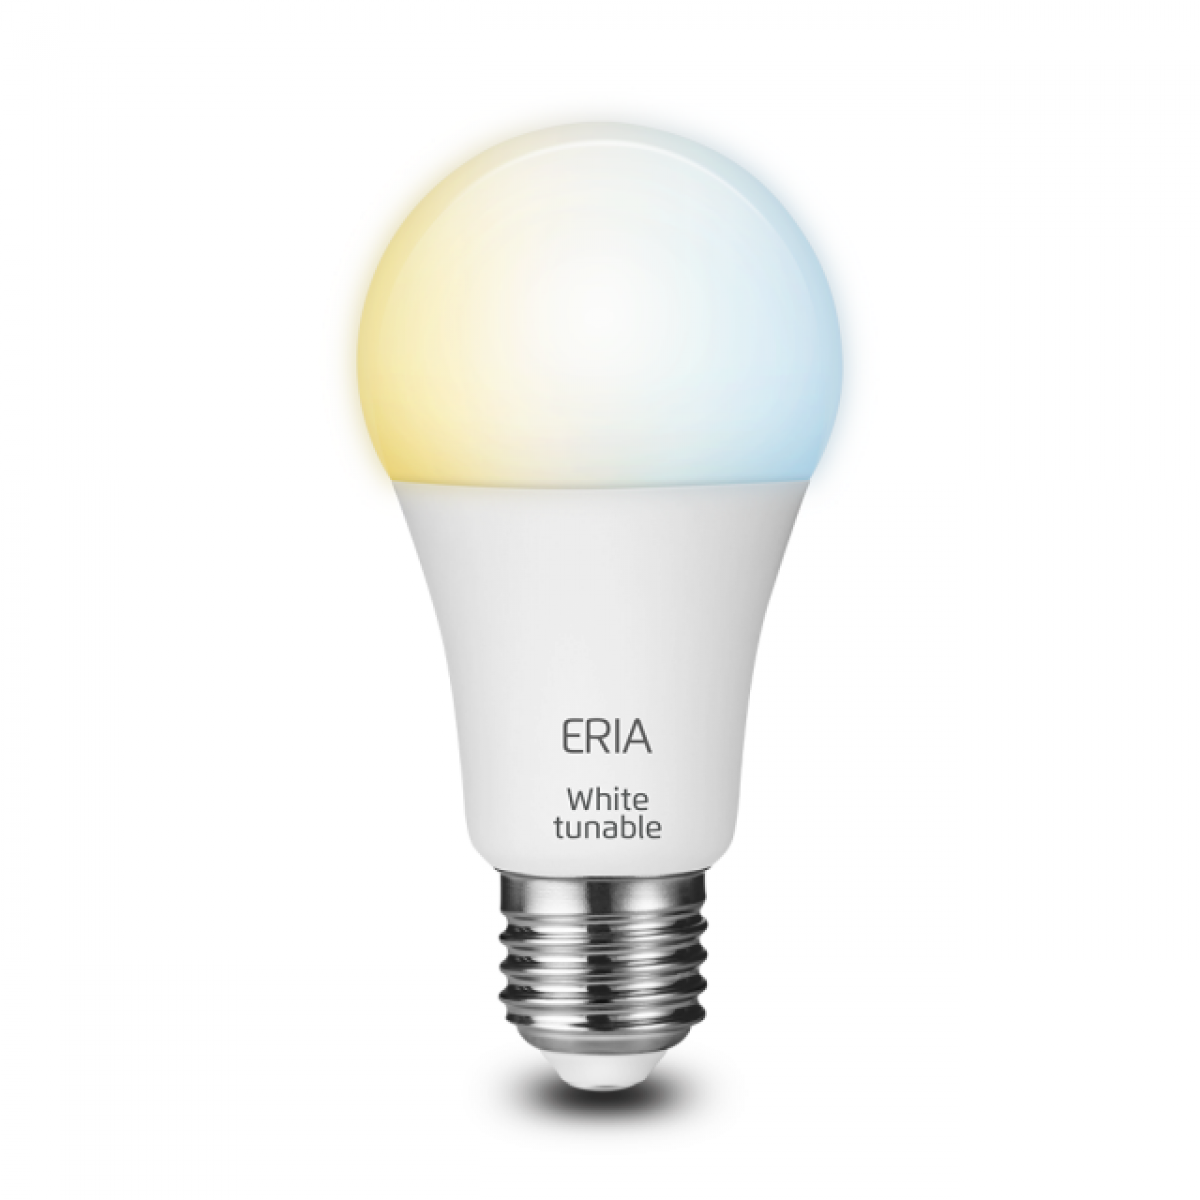 2020 - Eclairage intelligent (Ampoule) Blanc variable - Ampoules LED